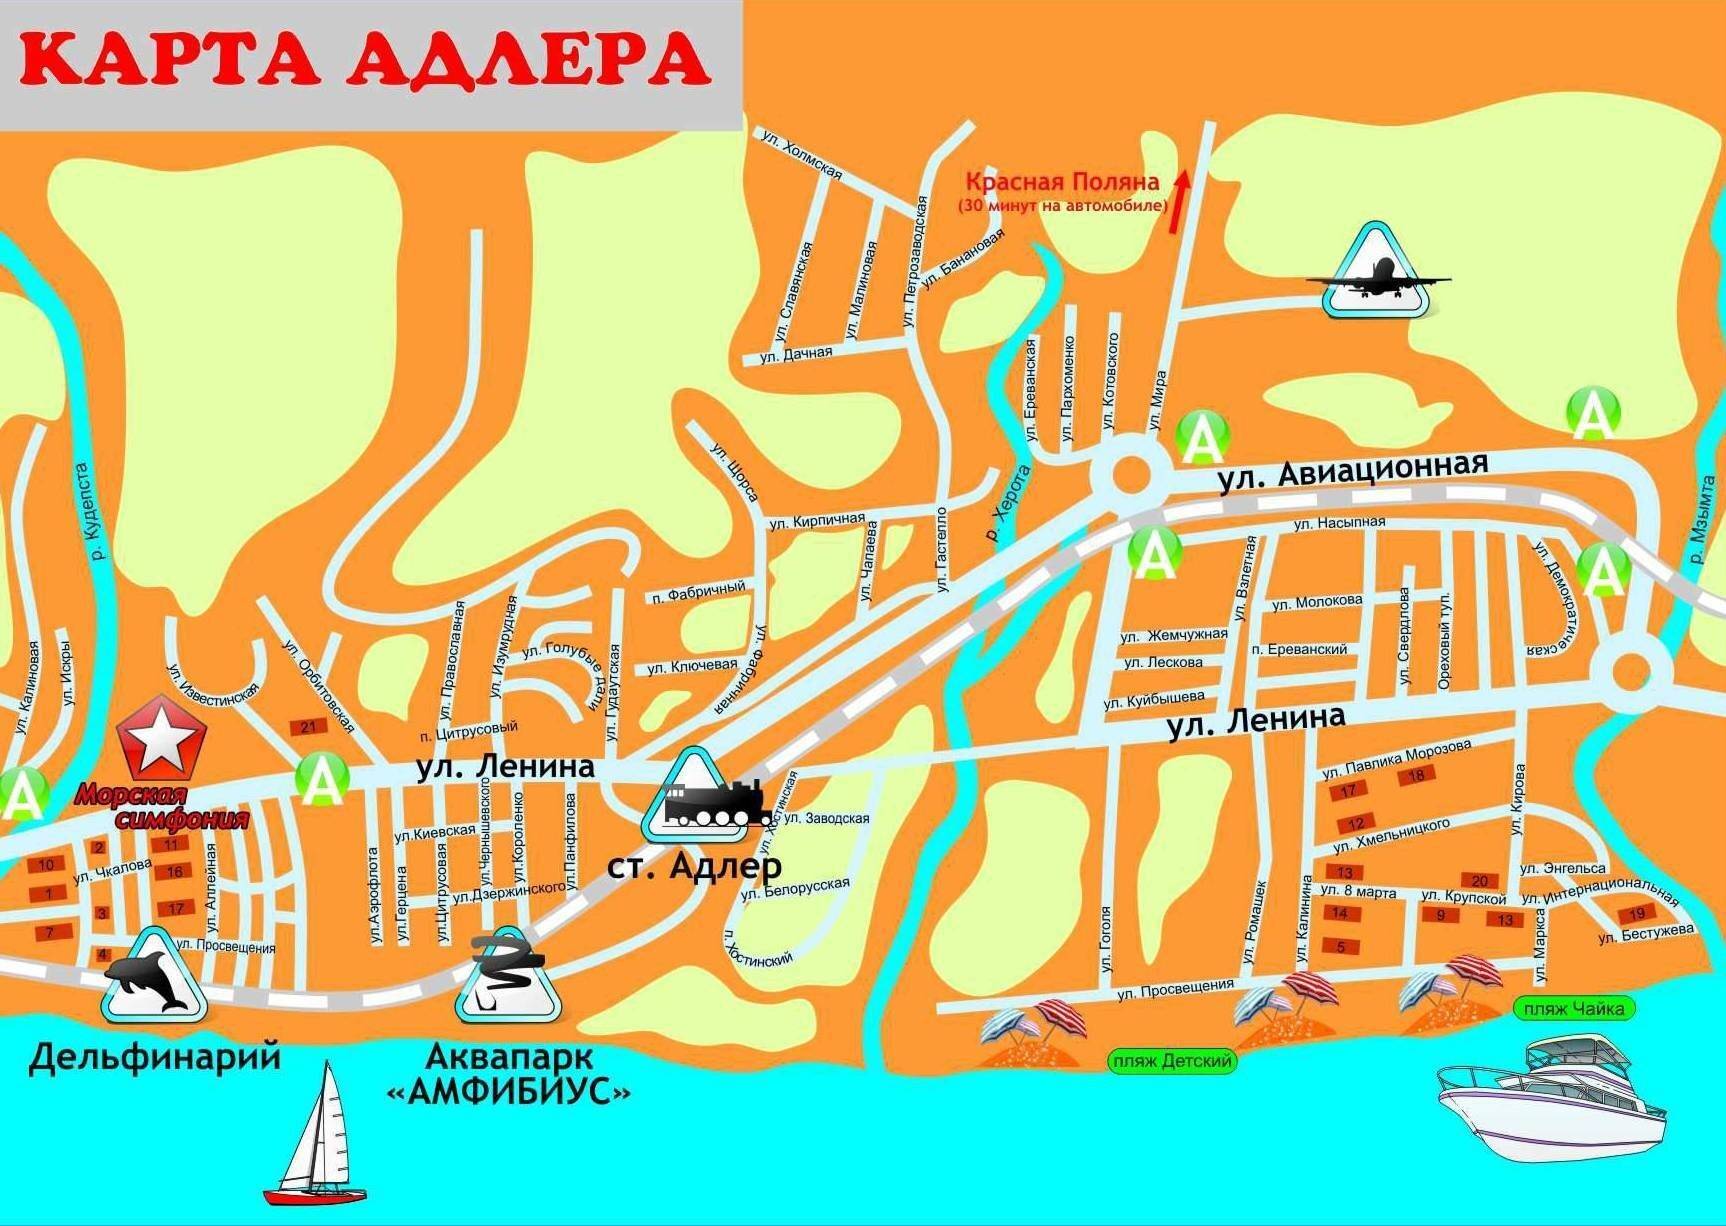 Карта с улицами и достопримечательностями в сочи